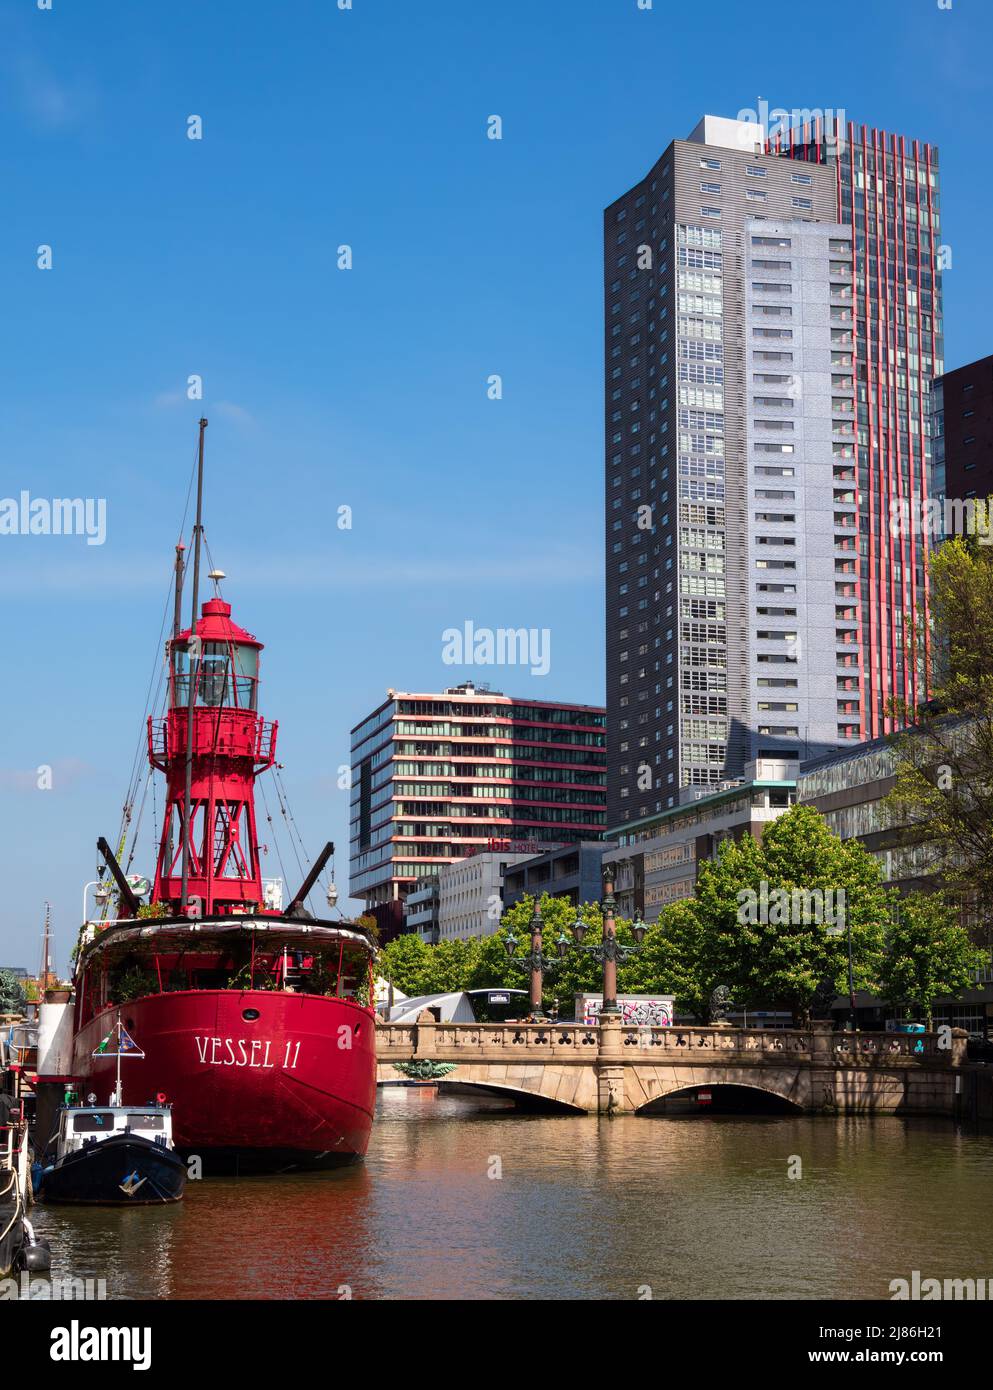 Rotterdam, Niederlande - 28. April 2022: Rotes Schiff Wesel II in Rotterdam, umgebaut in ein Restaurant und moderne Wohngebäude Stockfoto